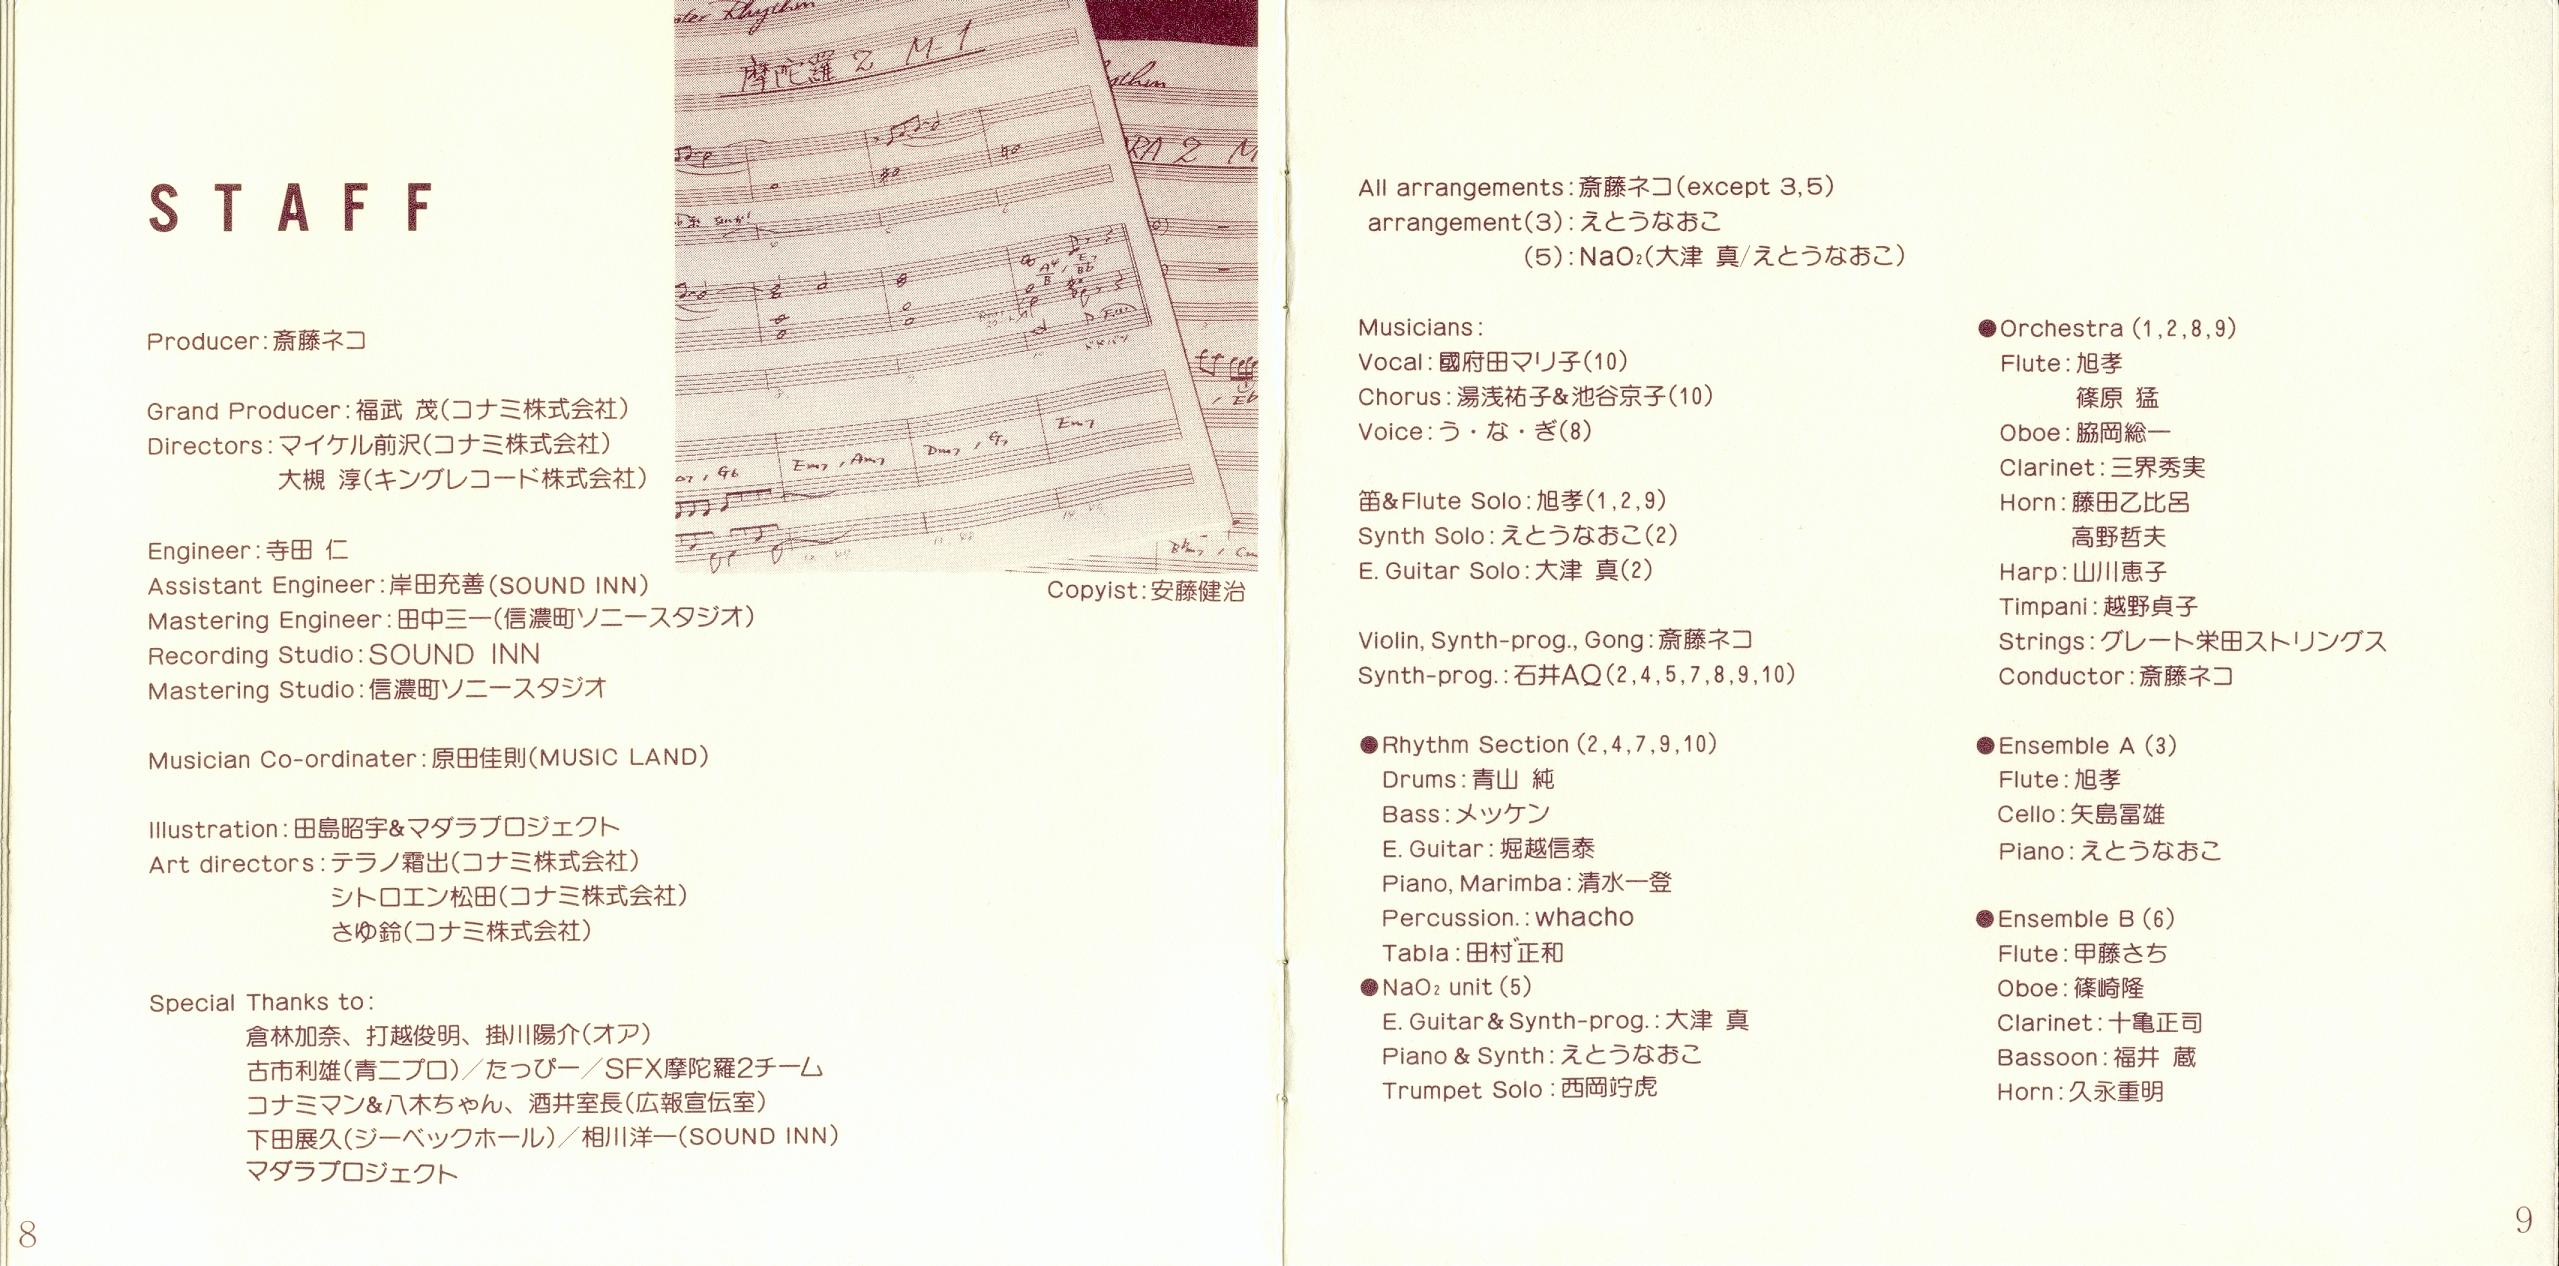 Mouryou Senki Madara 2 Sound Fantasia Mp3 Download Mouryou Senki Madara 2 Sound Fantasia Soundtracks For Free